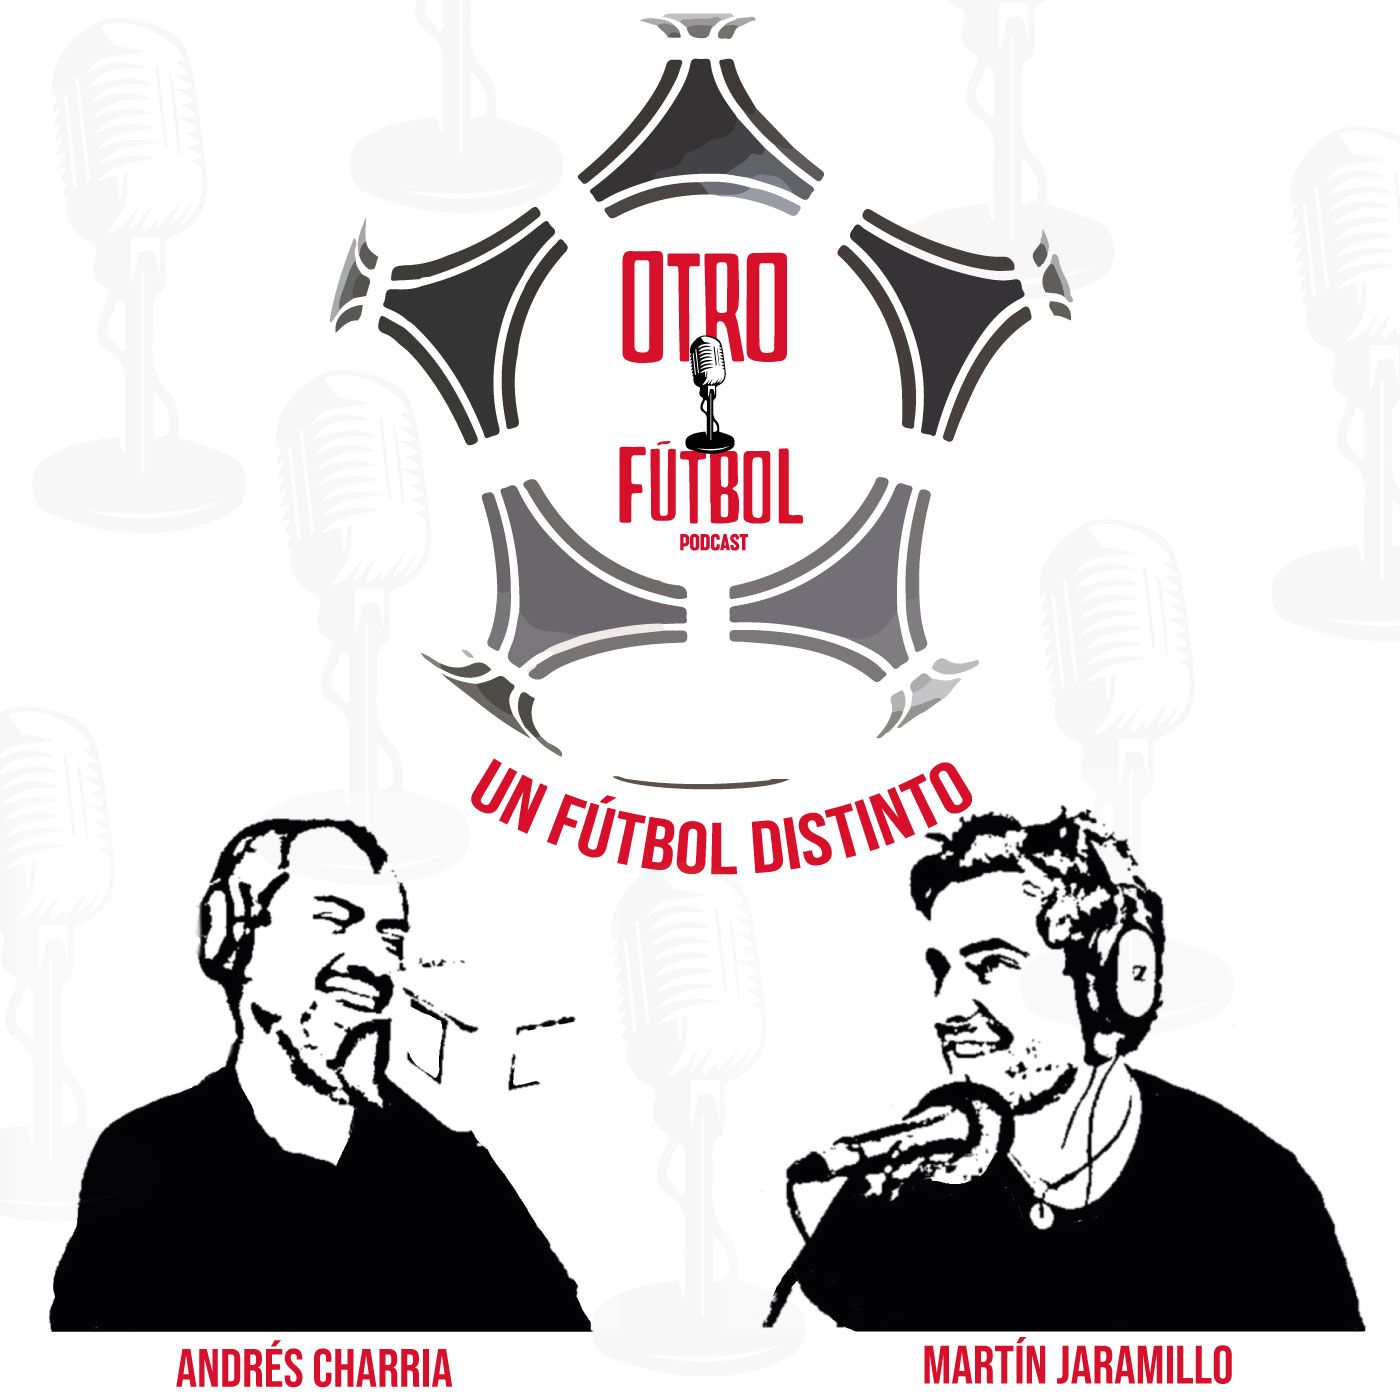 ¿Pueden separarse el fútbol y la política? Hablan Laila Abu Shihab y Alejandro Pino